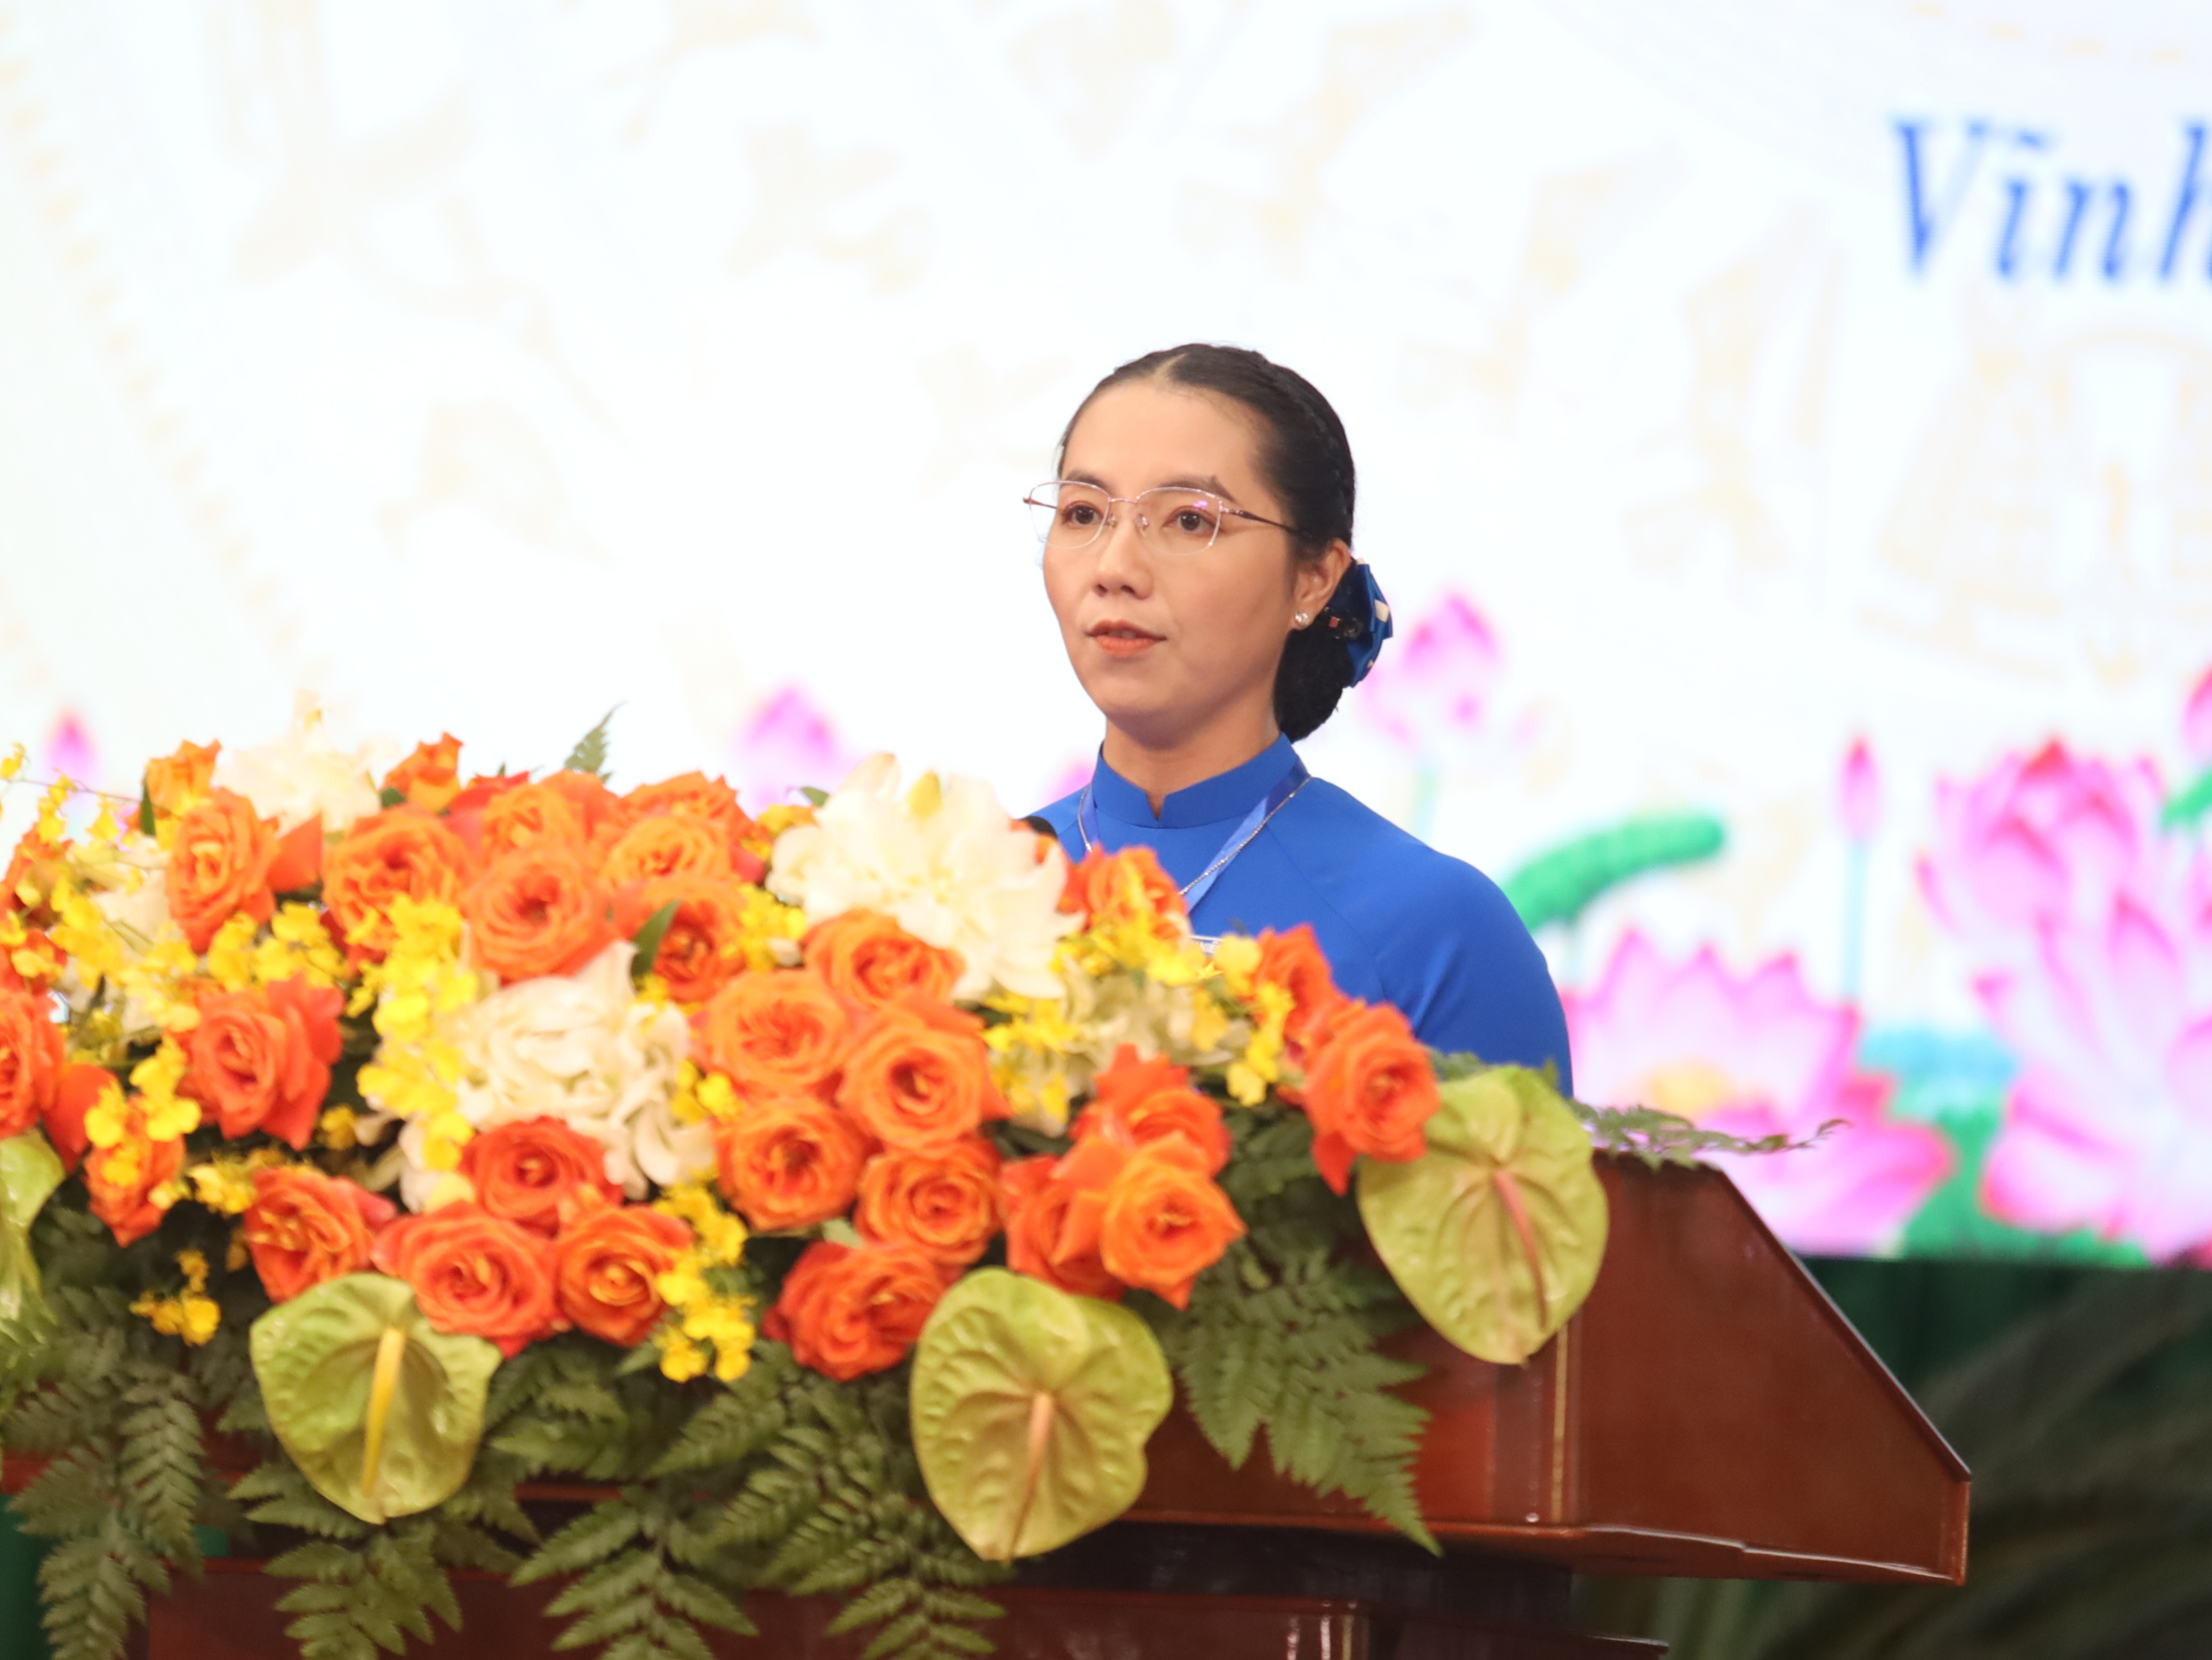 Đồng chí Nguyễn Thụy Yến Phương - quyền Bí thư Tỉnh đoàn Vĩnh Long phát biểu tại lễ kỷ niệm.